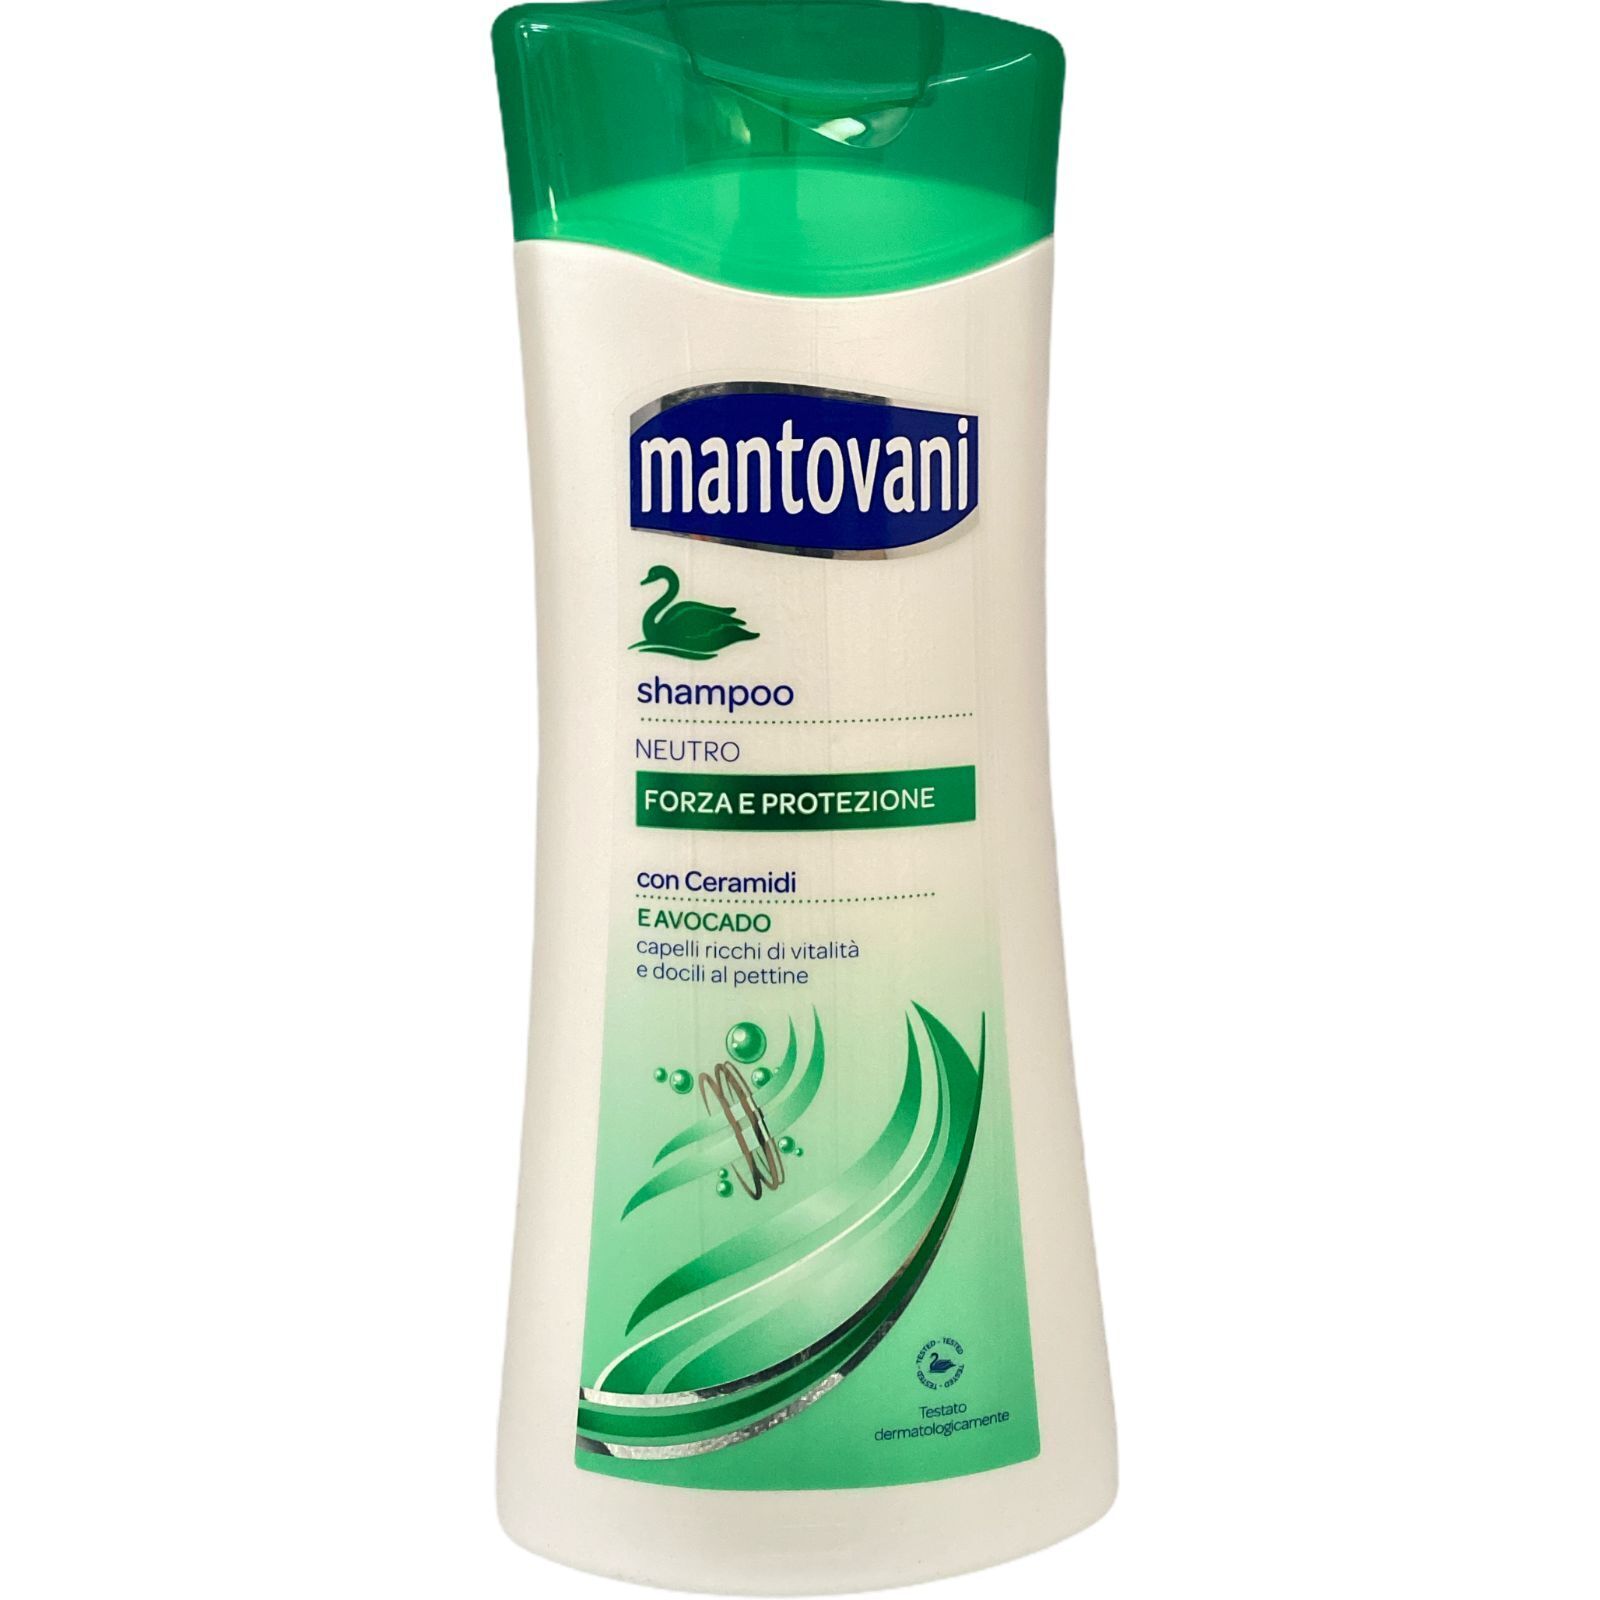 Mantovani Shampoo Neutro Forza e Protezione - Clicca l'immagine per chiudere